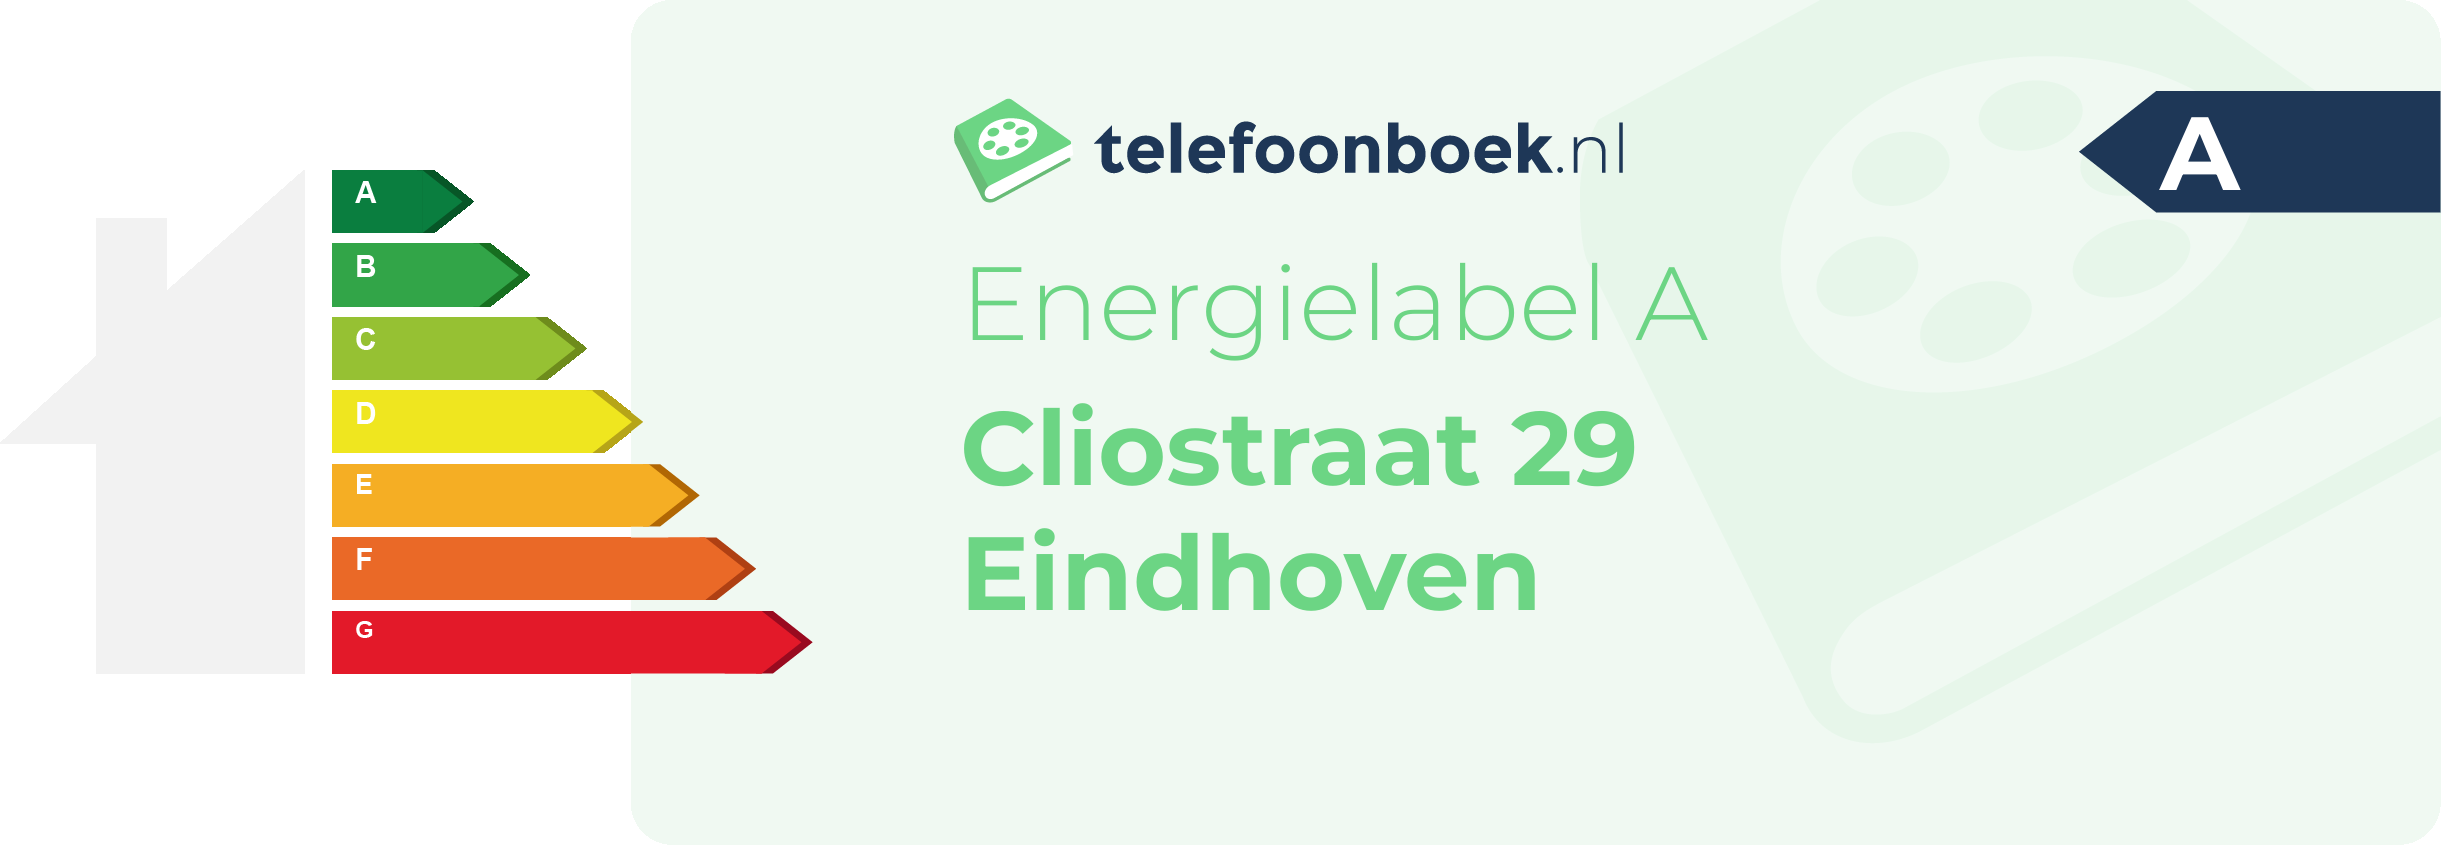 Energielabel Cliostraat 29 Eindhoven